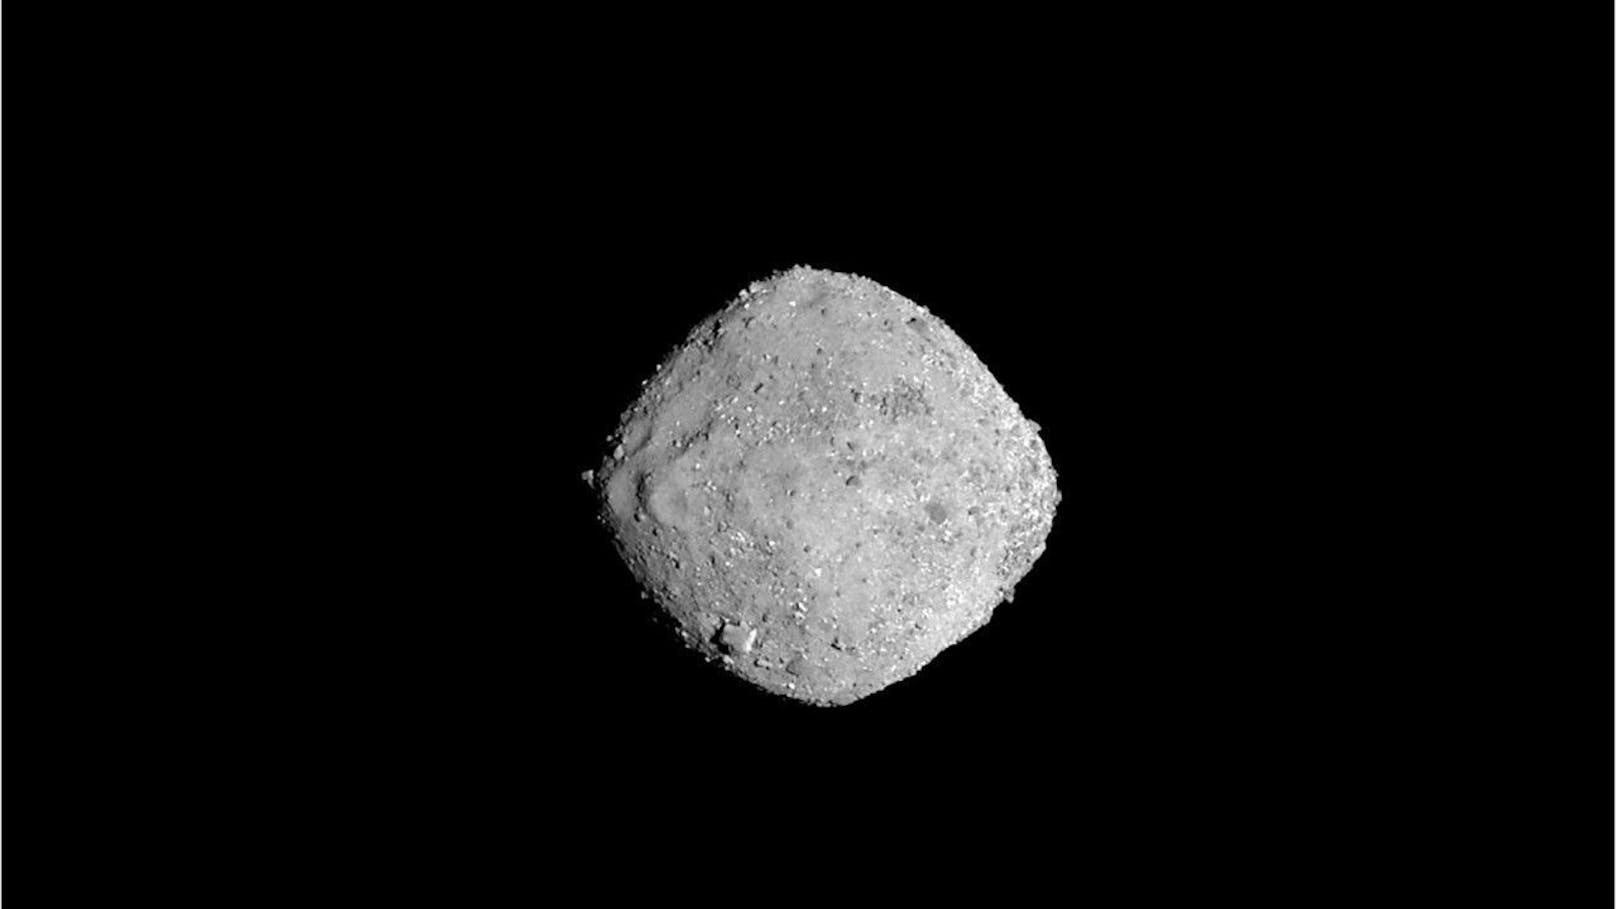 Asteroid "Bennu" kommt der Erde gefährlich nahe.